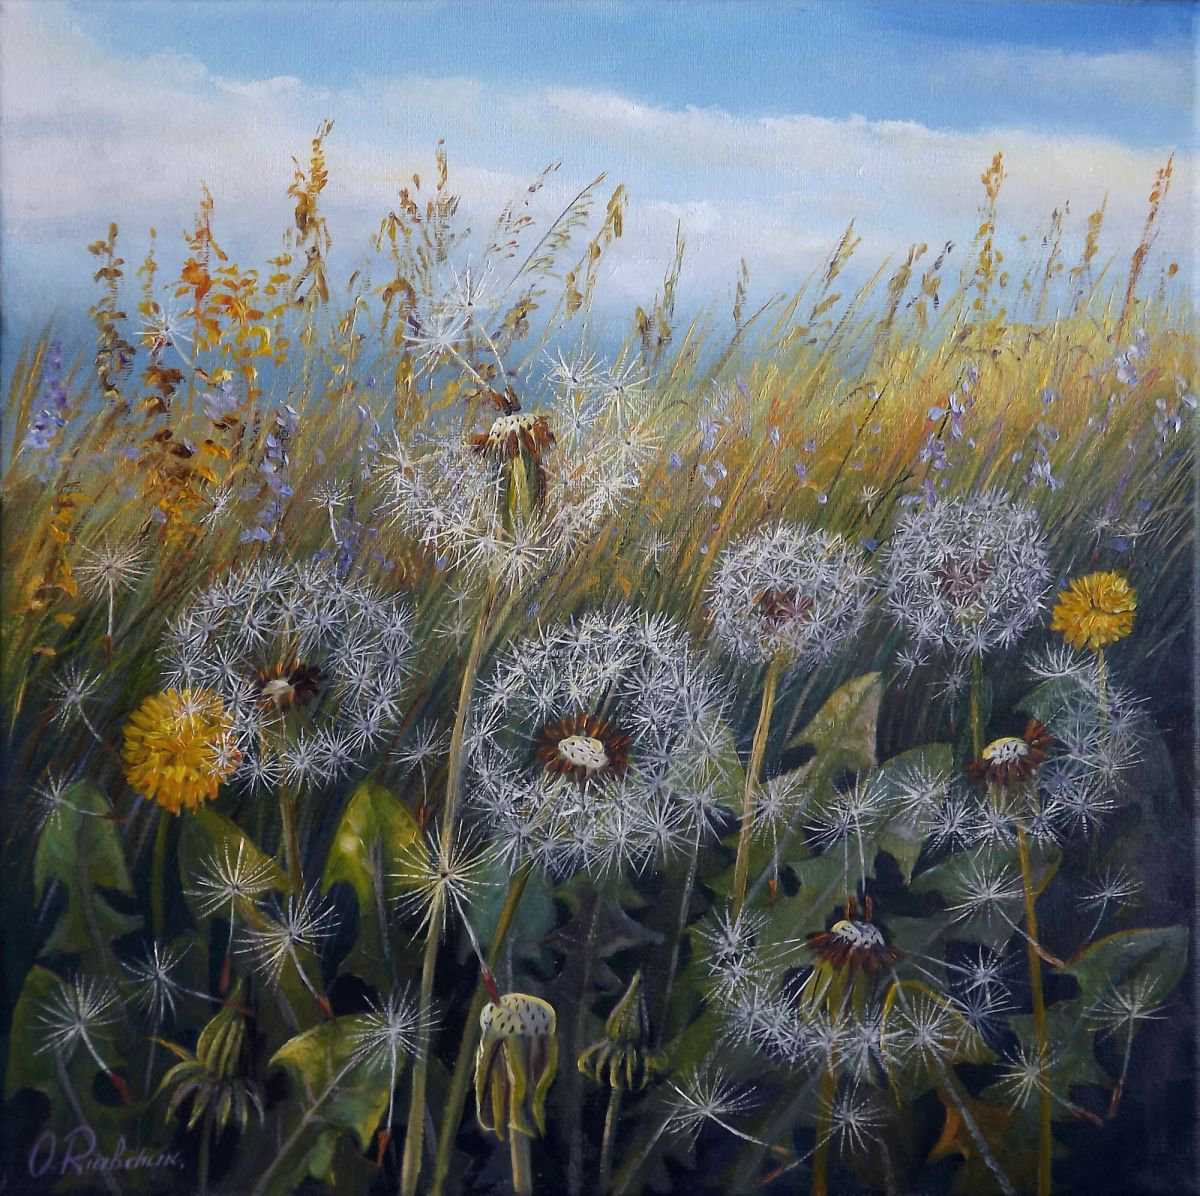 Dandelion Field Oil painting by Oleg Riabchuk | Artfinder